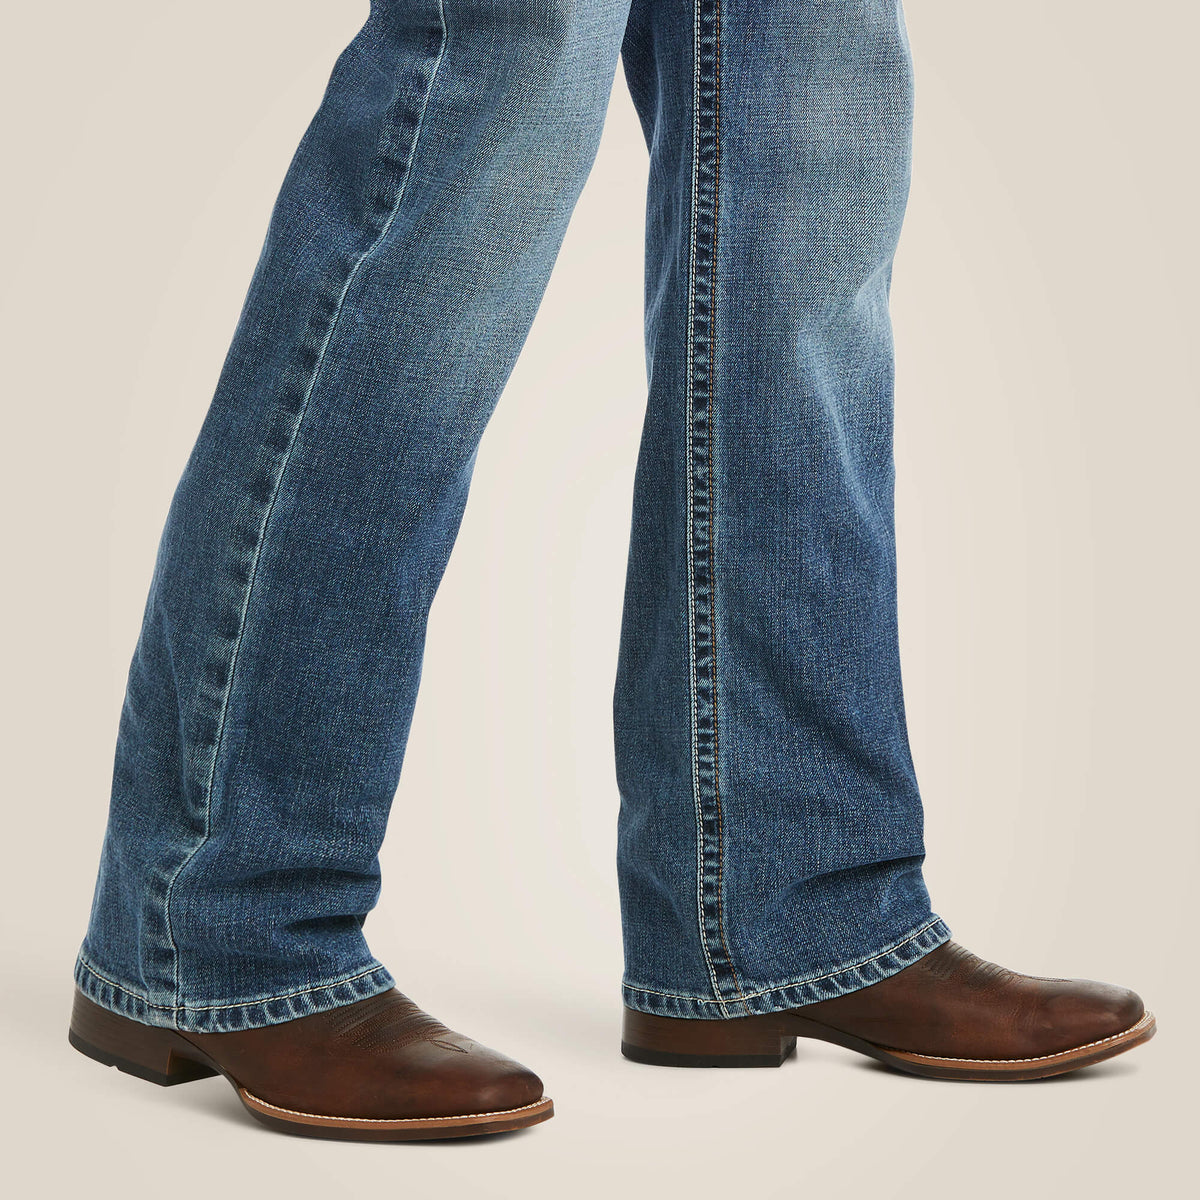 Ariat Men's M5 Slim Stretch Stillwell Stackable Straight Leg Jeans in Fargo